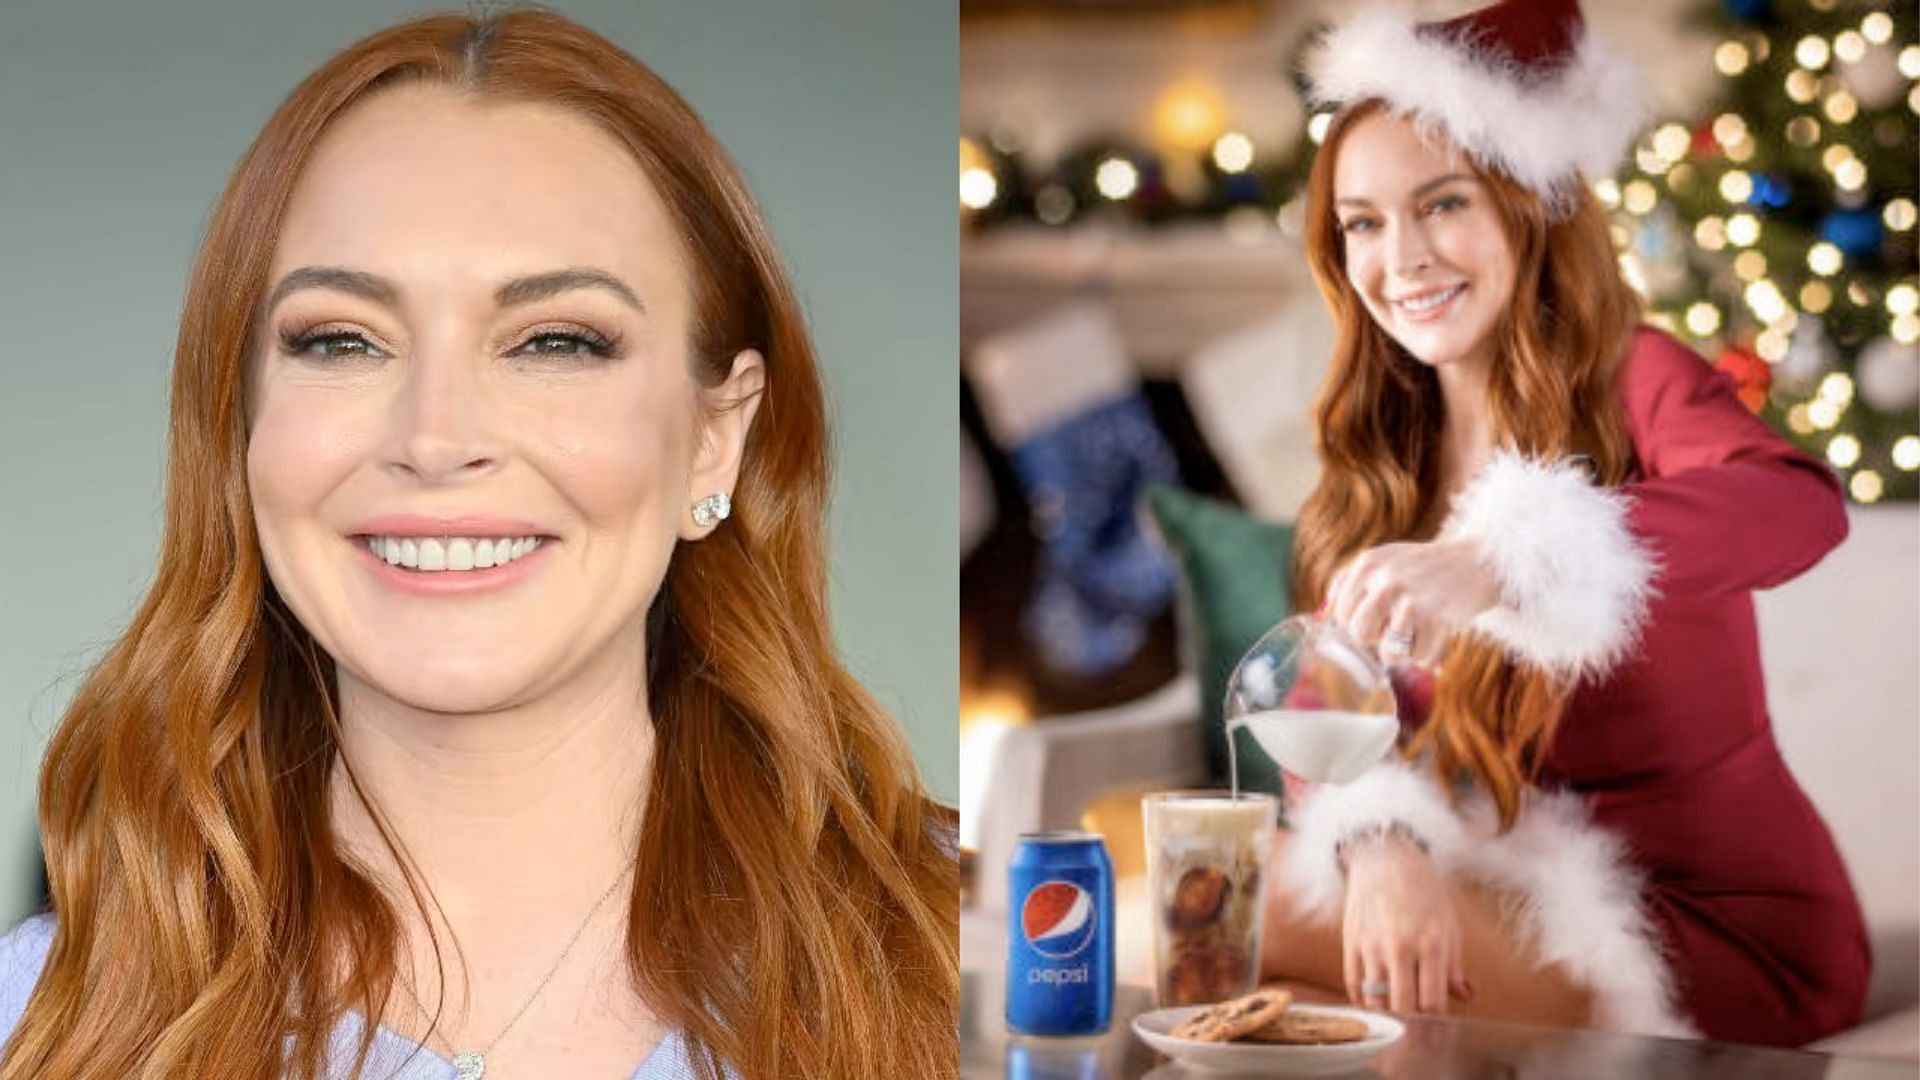 Lindsay Lohan x Pepsi pilk ad leaves people confused (image via Twitter)